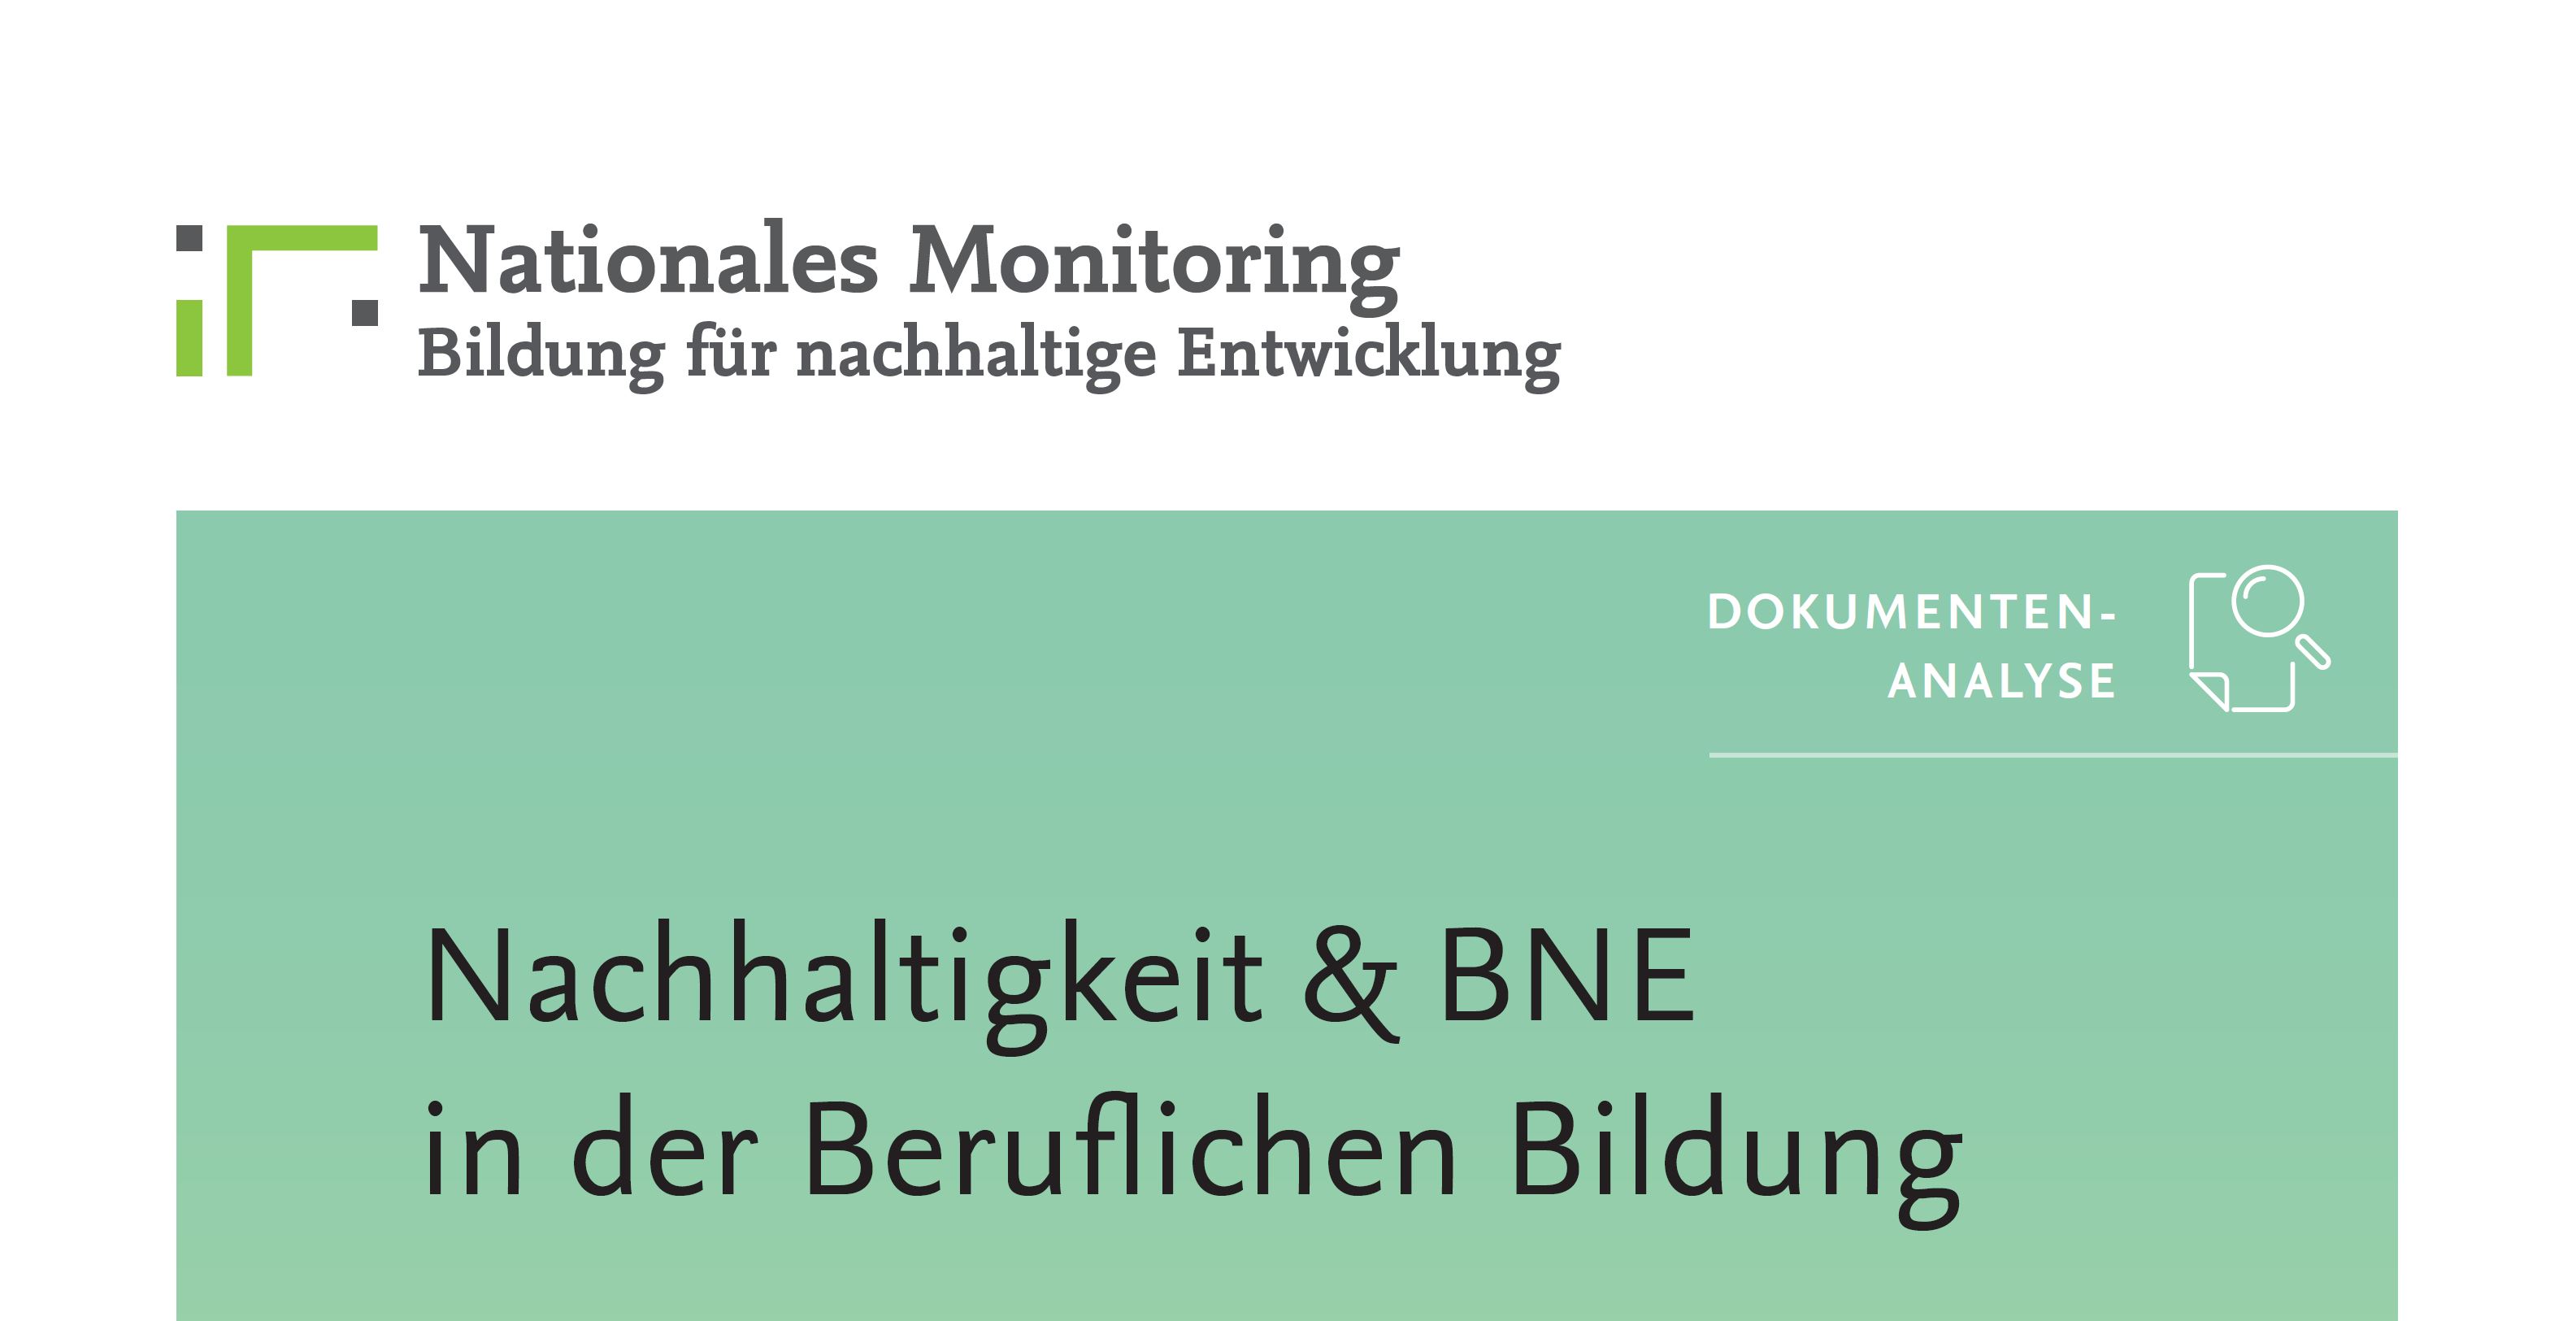 Monitoring: Neue Ergebnisse zur Verankerung von Nachhaltigkeit und BNE in der Beruflichen Bildung